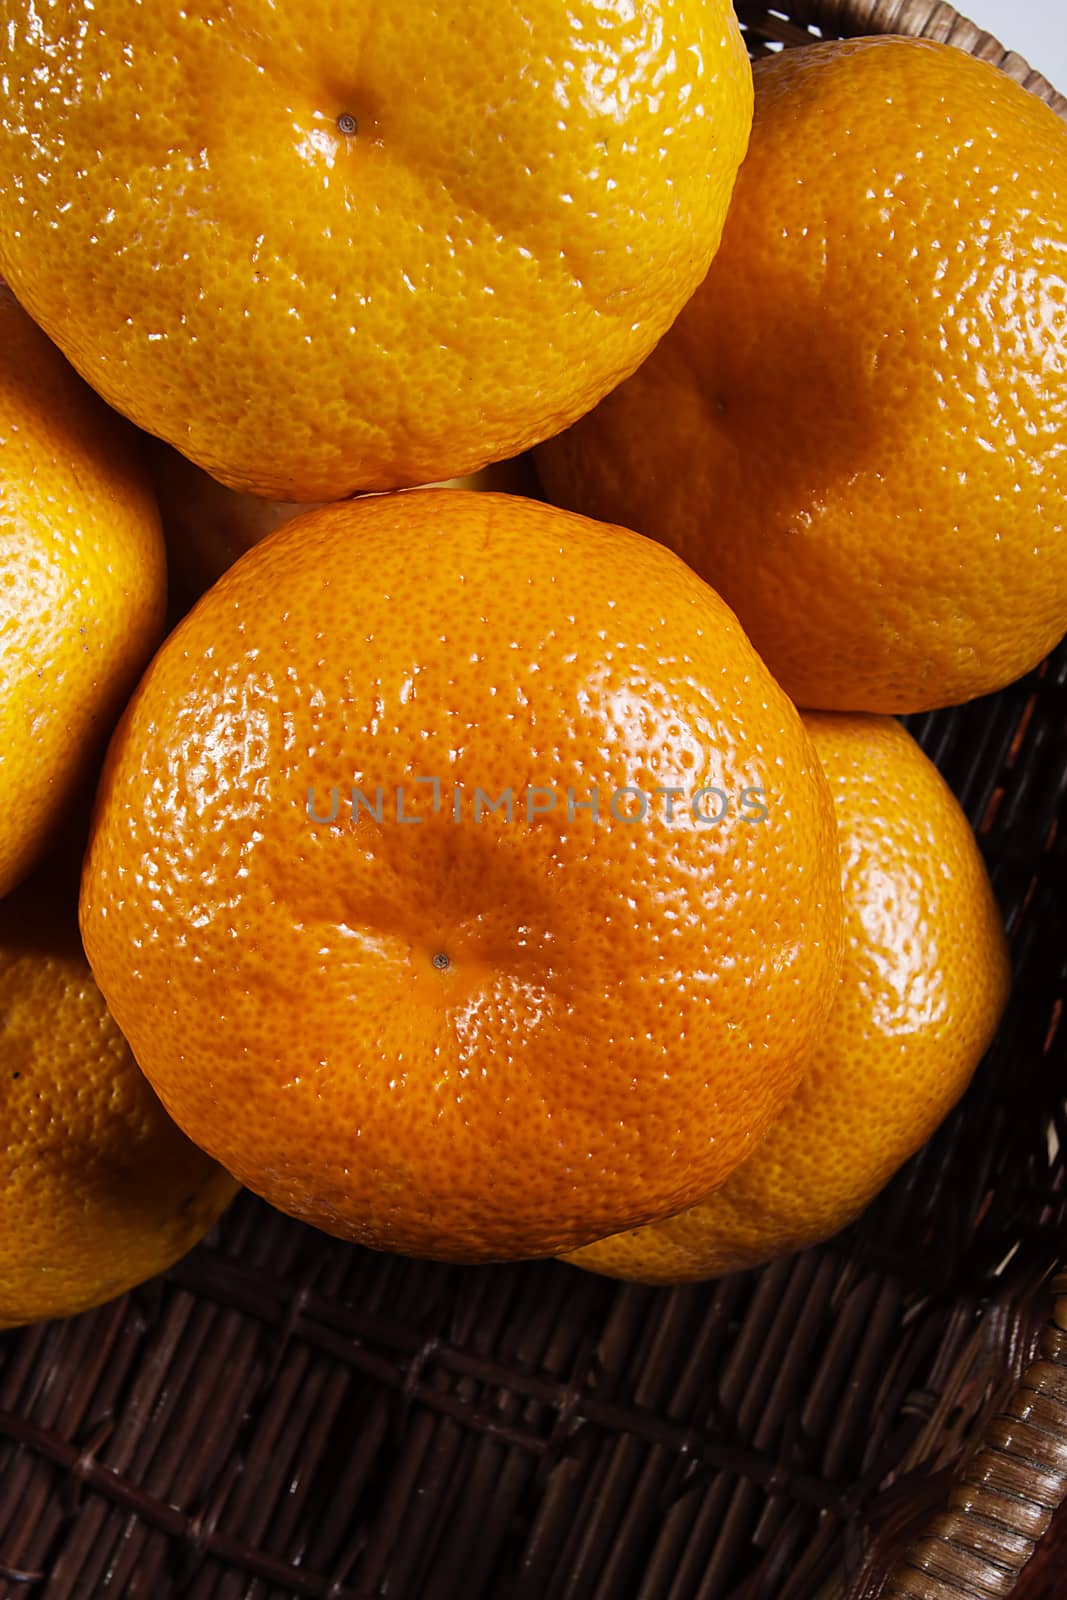 Ripe orange tangerines in a wicker basket